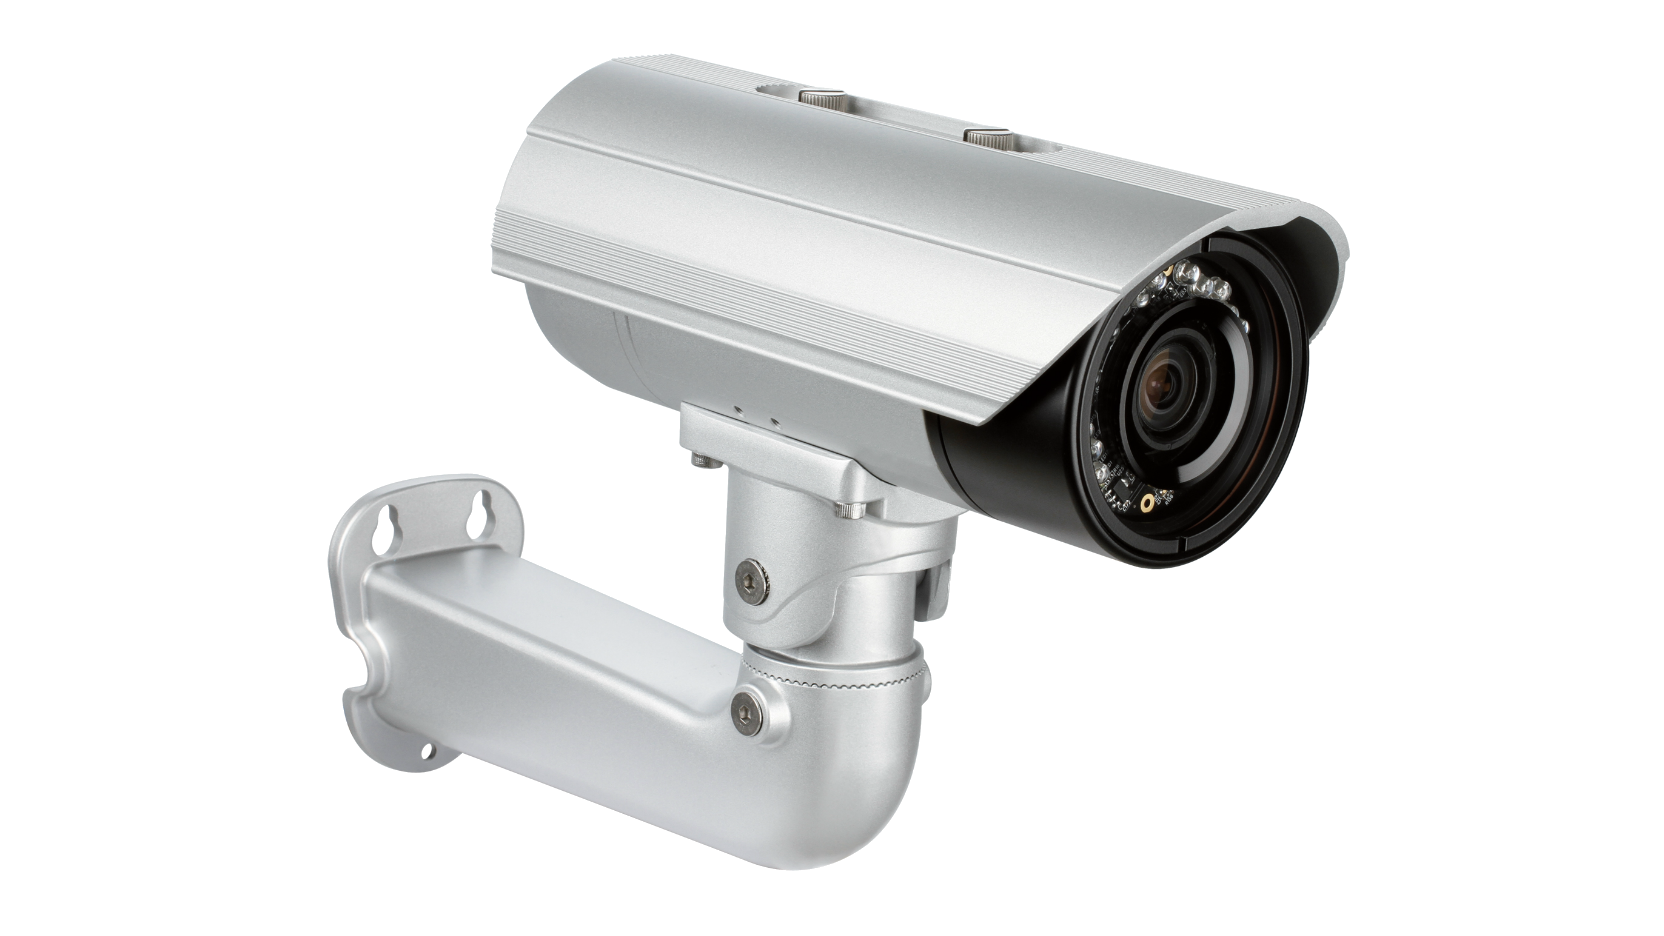 DCS-930L - D-Link 120/230V 2W F/2.8 Network Surveillance Camera Fixed